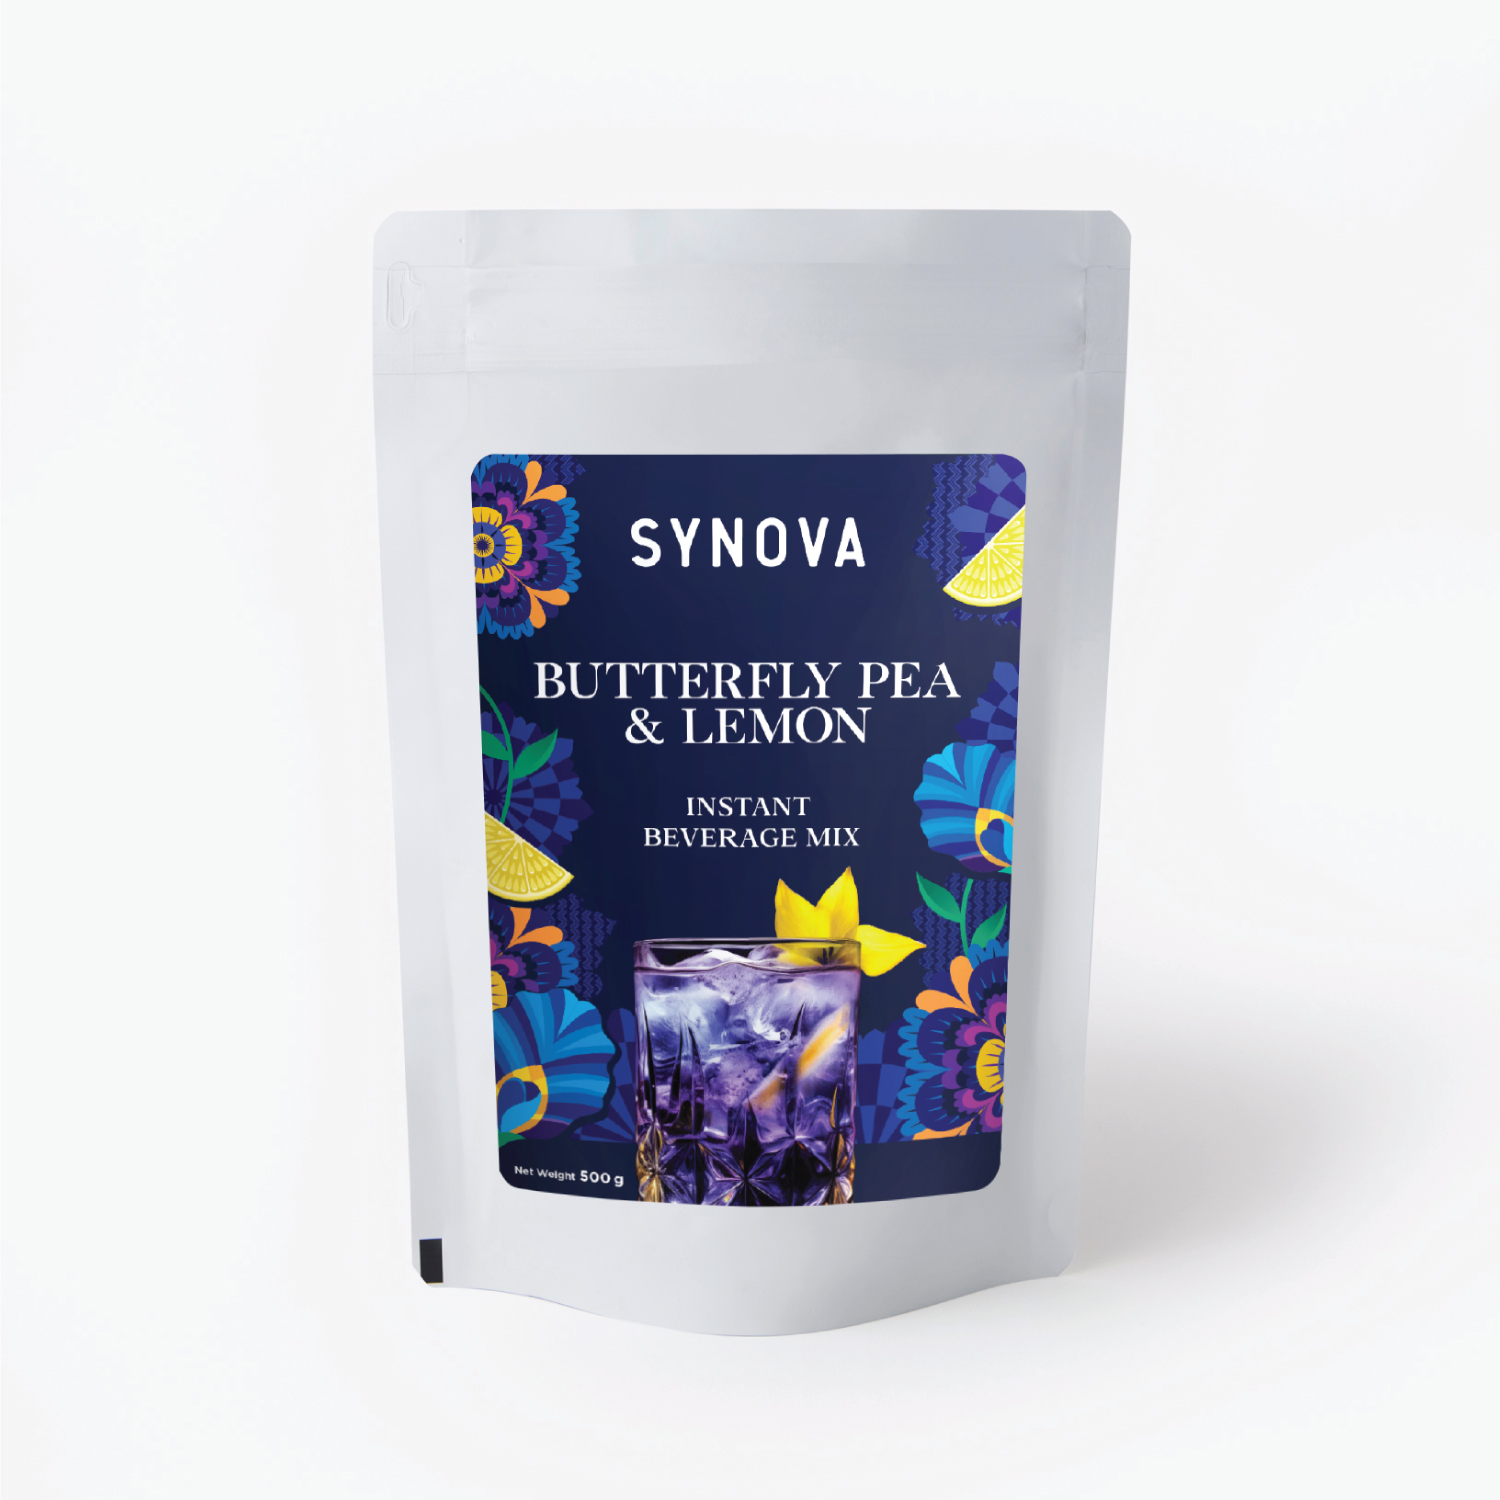 ผงเครื่องดื่มปรุงสำเร็จ : SYNOVA อัญชันมะนาวพรีมิกซ์ (ยกกล่อง)